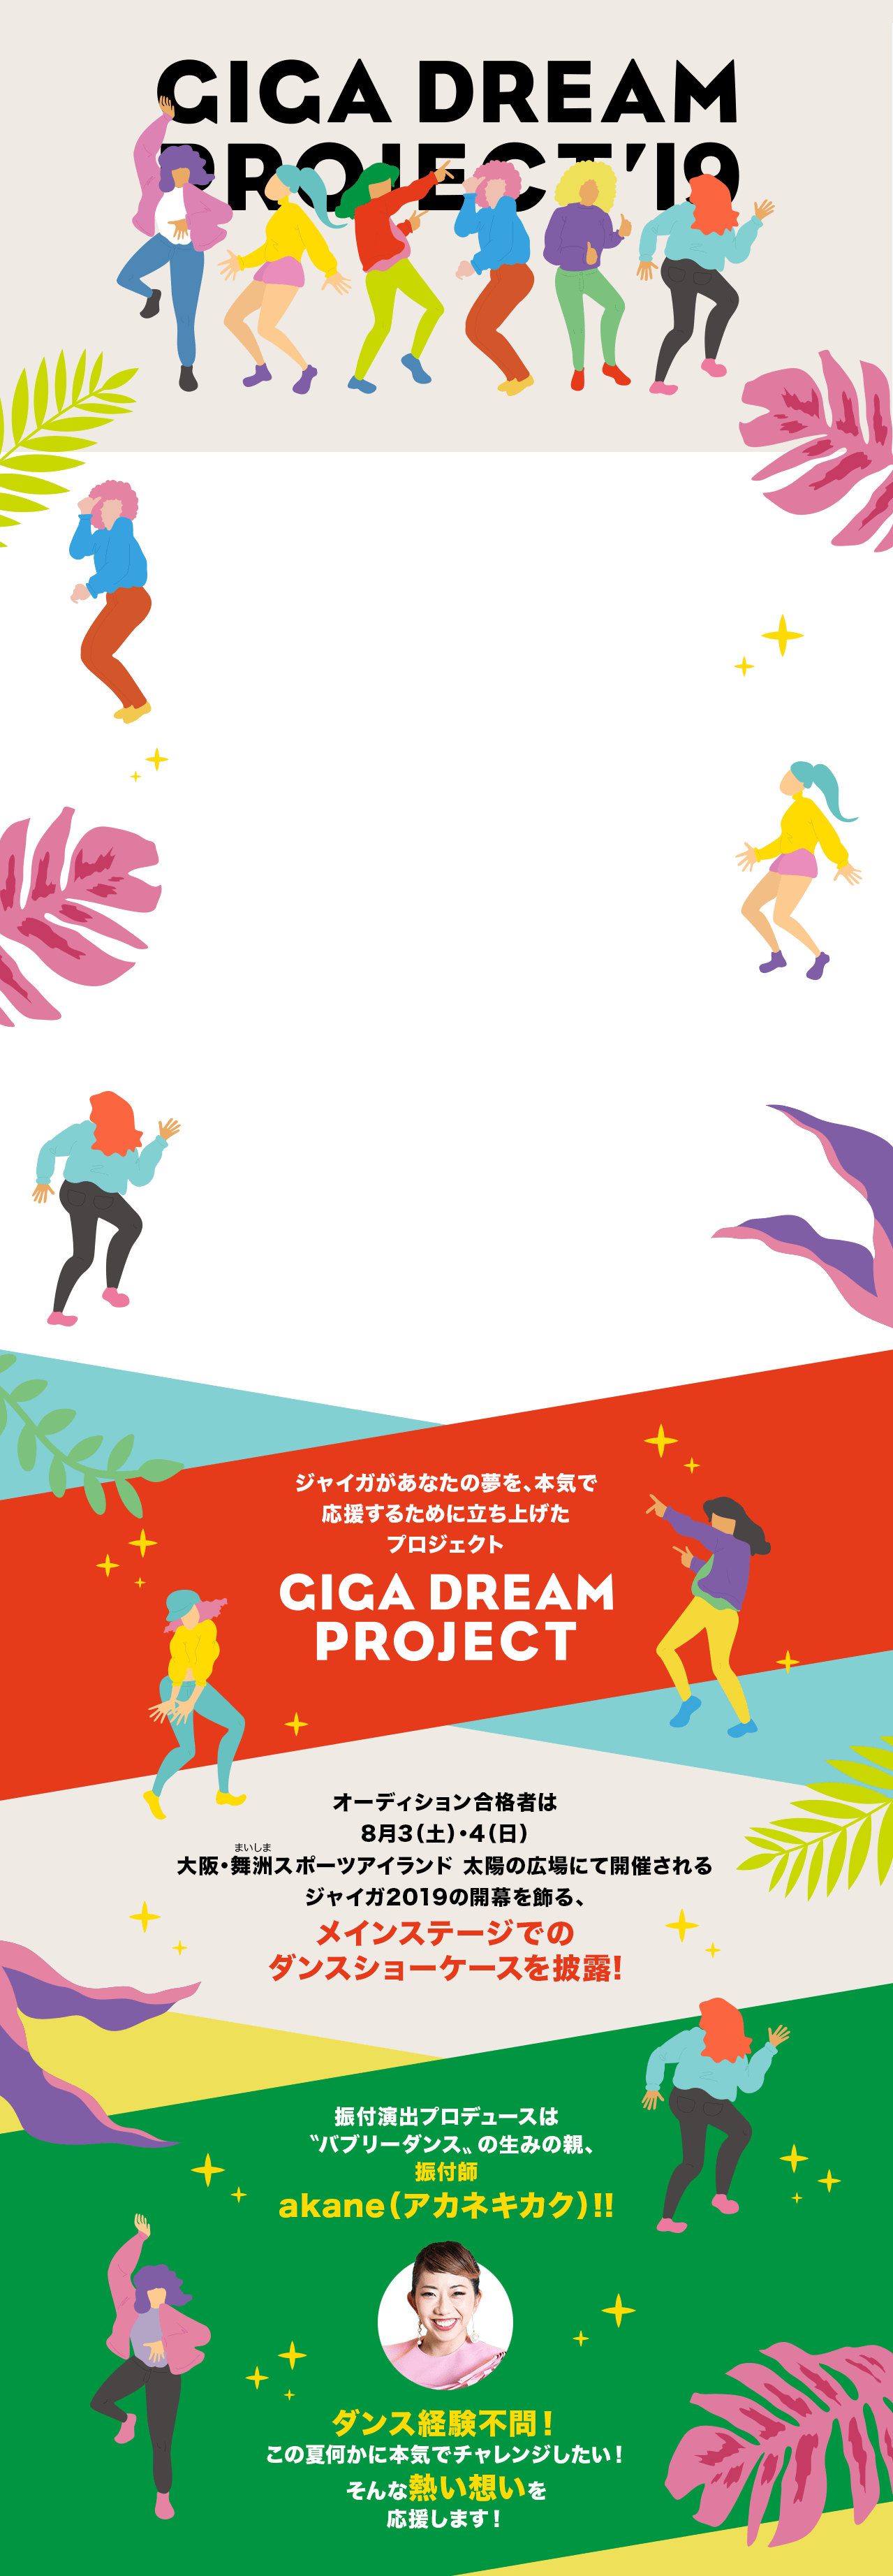 ジャイガが夢を本気で応援するために立ち上げたプロジェクト GIGA DREAM PROJECT